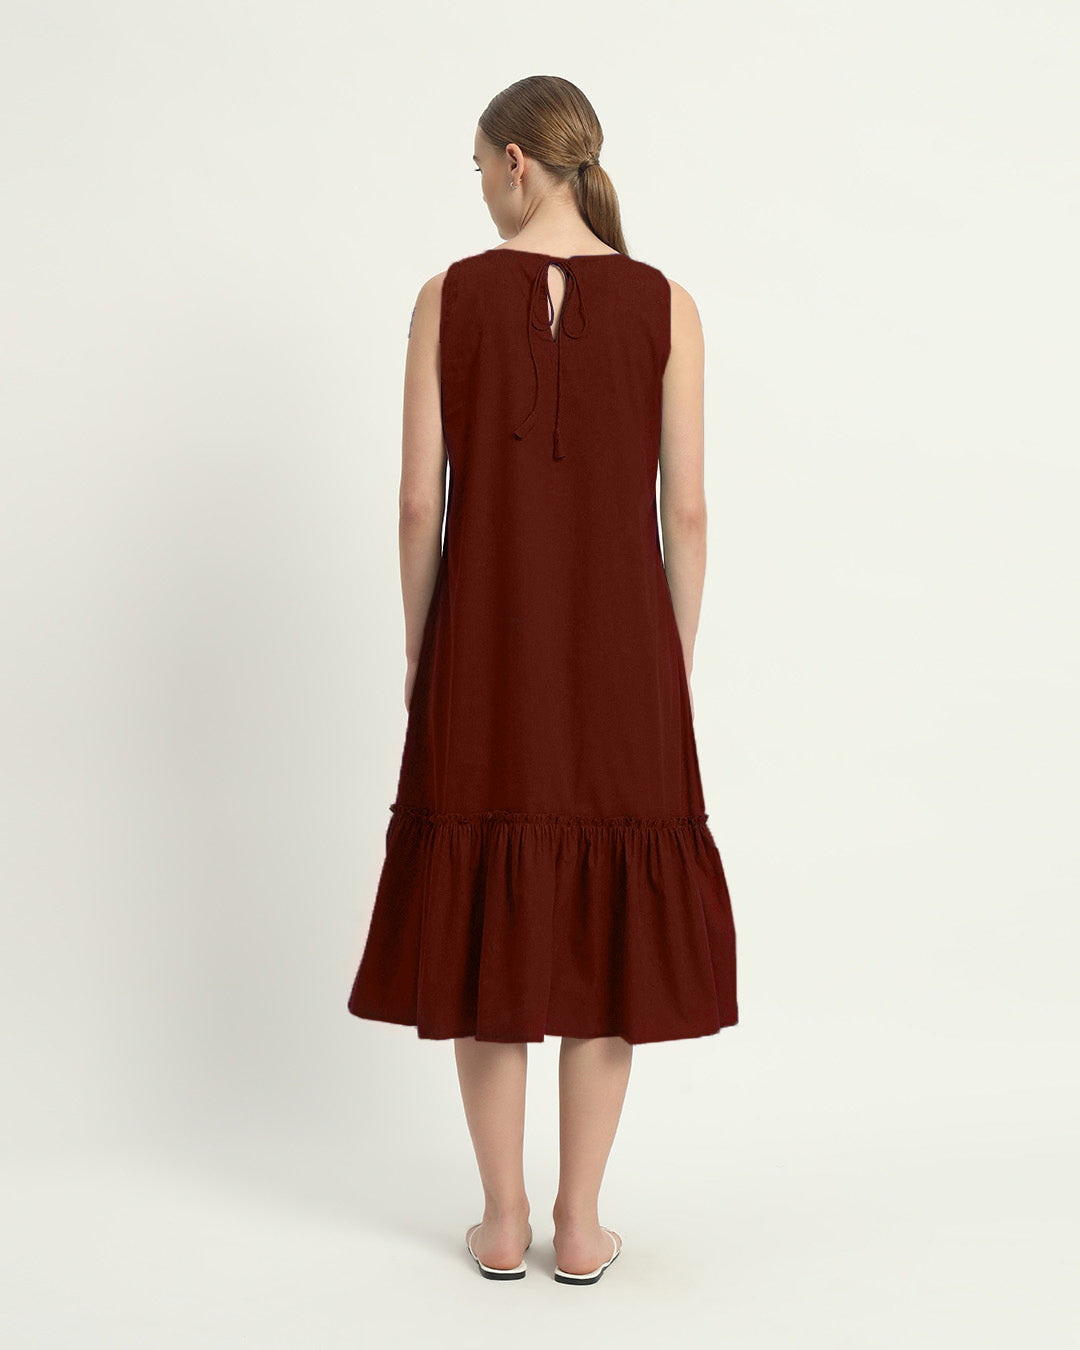 The Rouge Millis Cotton Dress